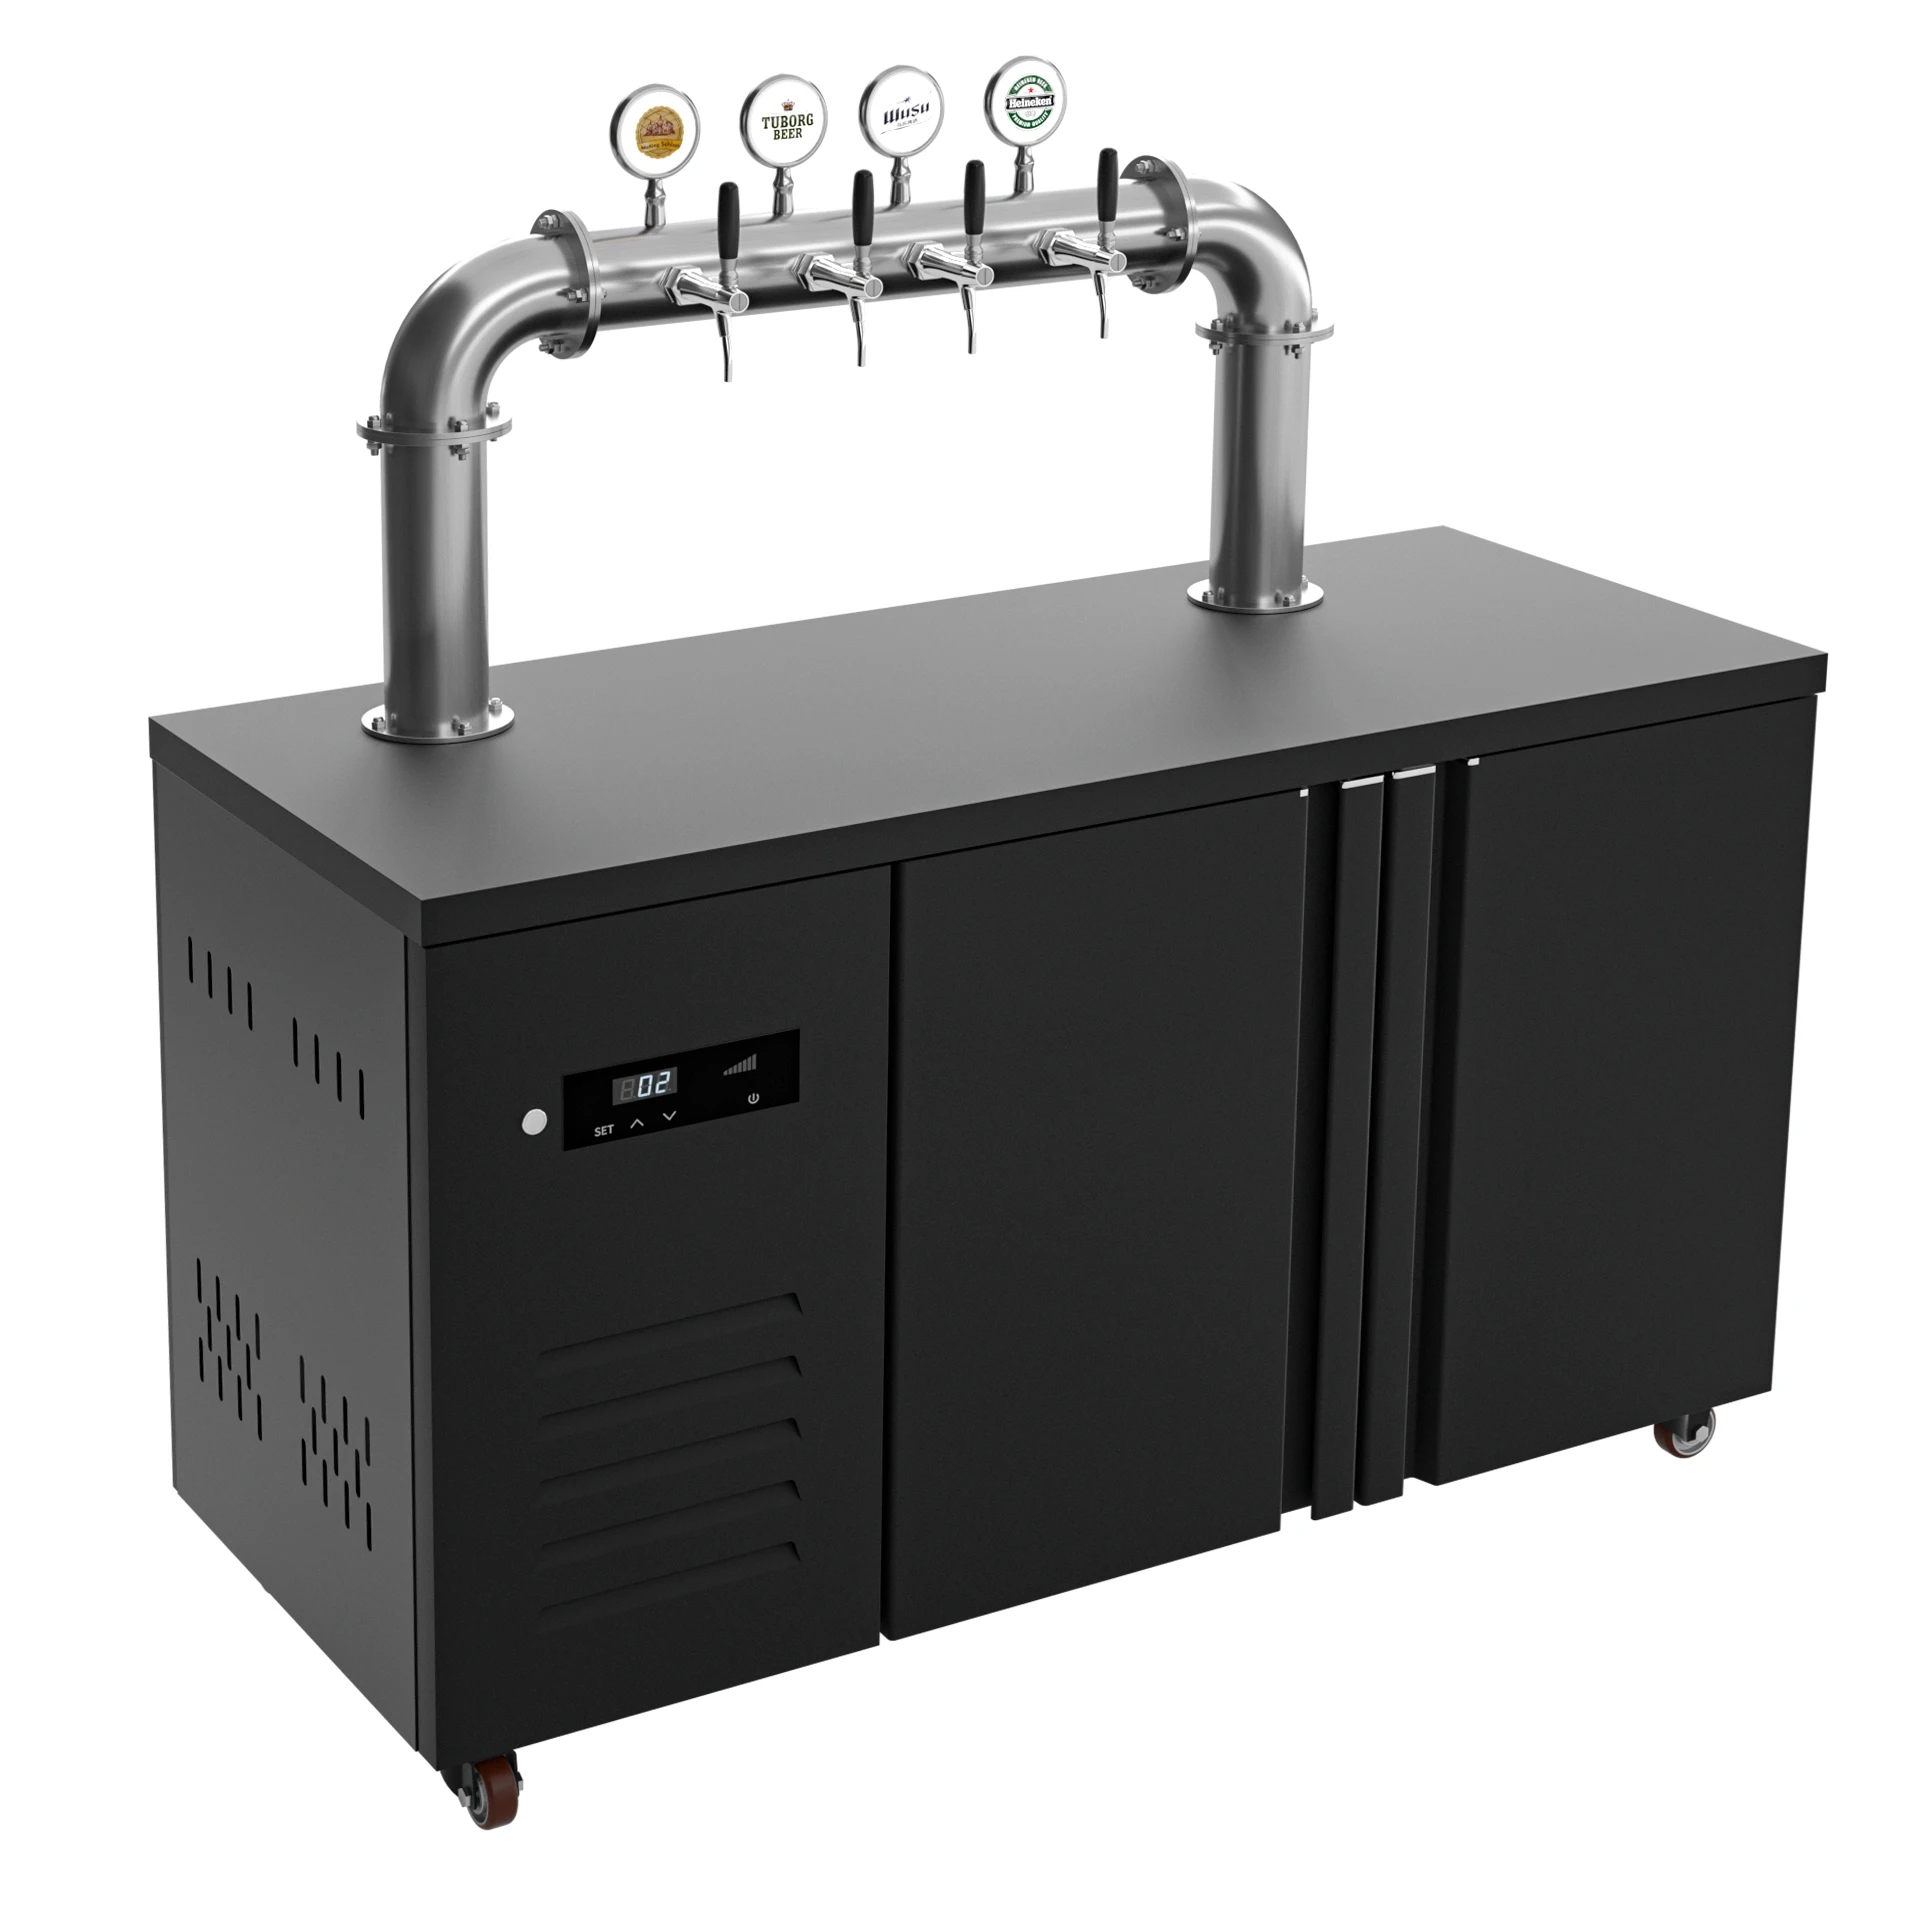 Electric Beer Keg Stainless Steel Beer Machines Refrigerate Beer Cooler Keg Beer Tap Dispensers Drink For Bar Restaurant Hotel